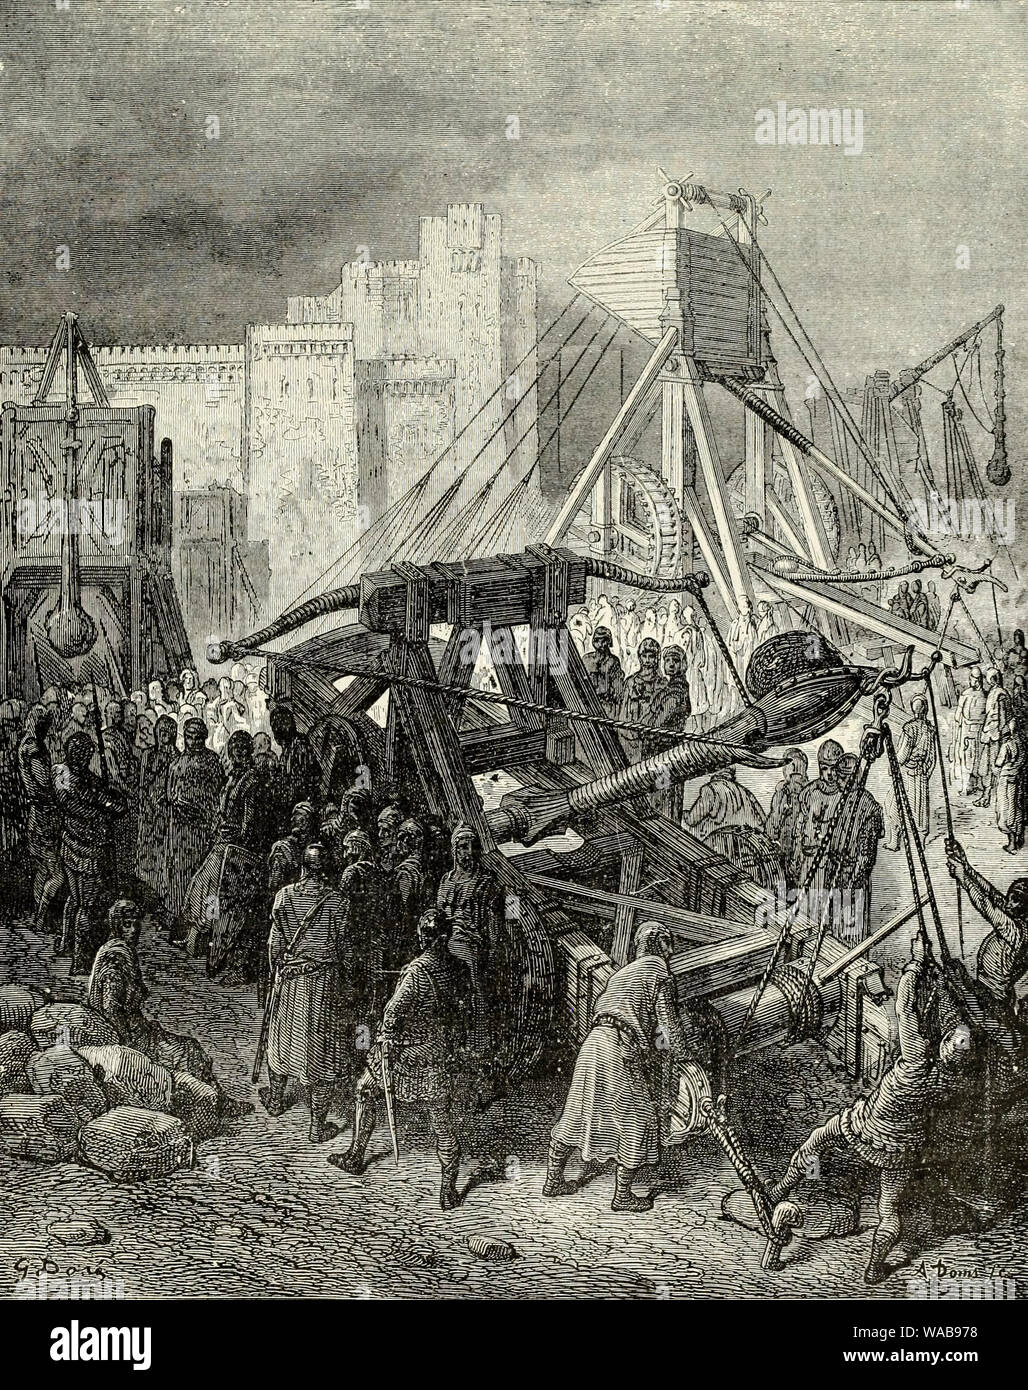 Les machines de guerre des croisés, des croisades, catapulte médiévale, gravure, avant 1883 Banque D'Images